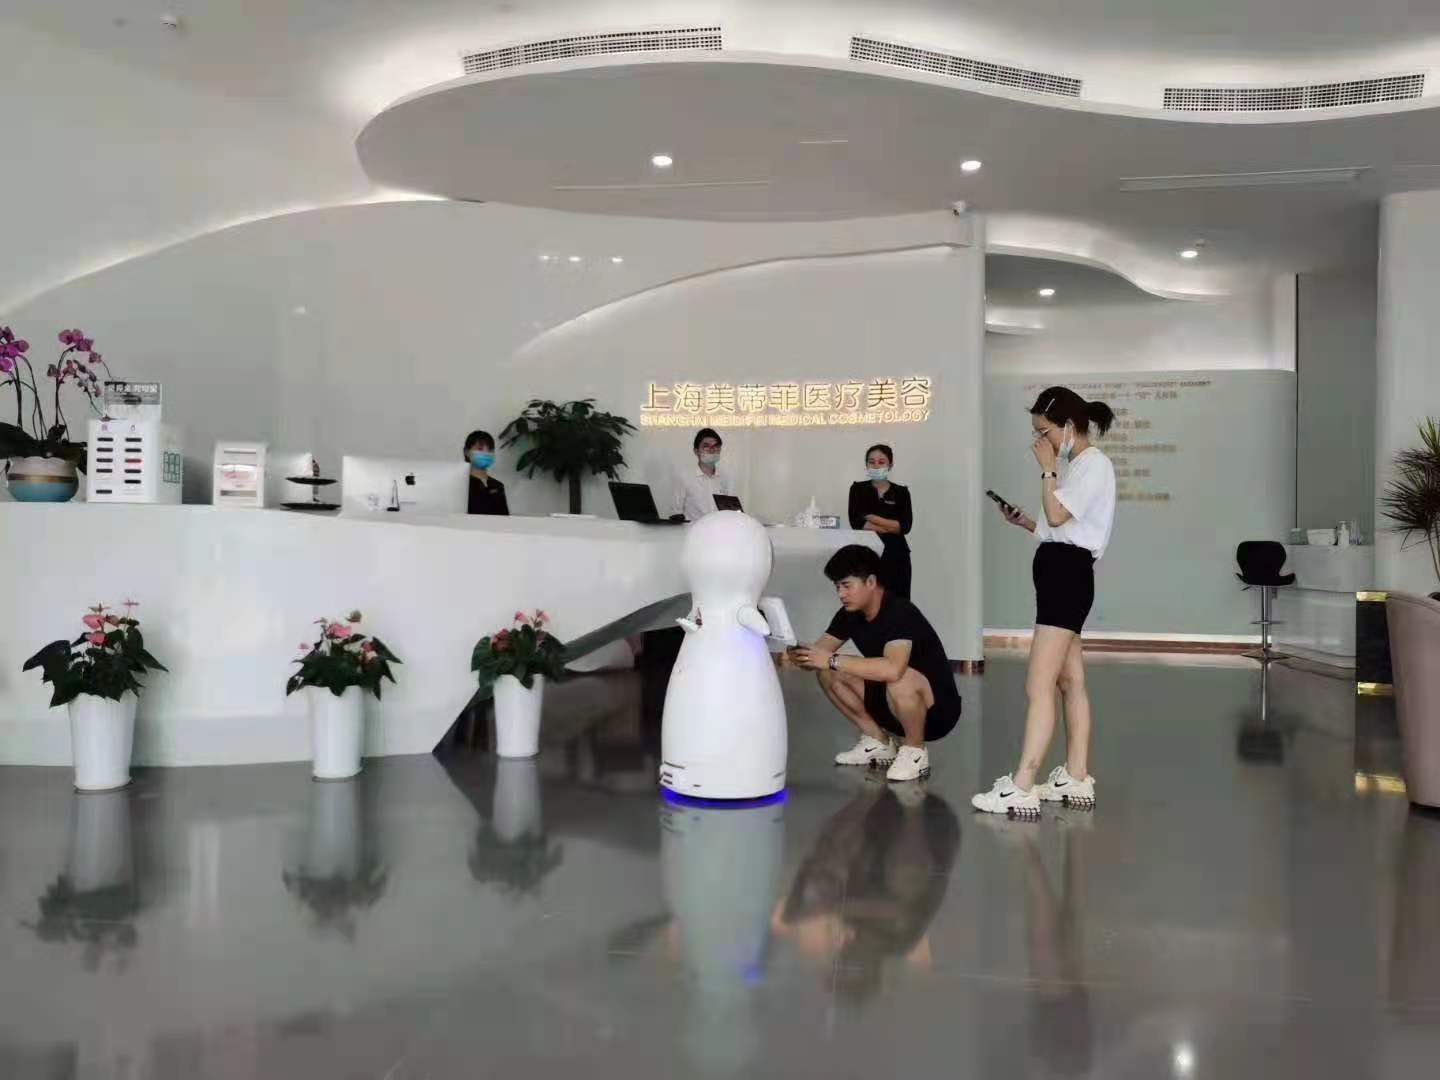 惠州导诊机器人